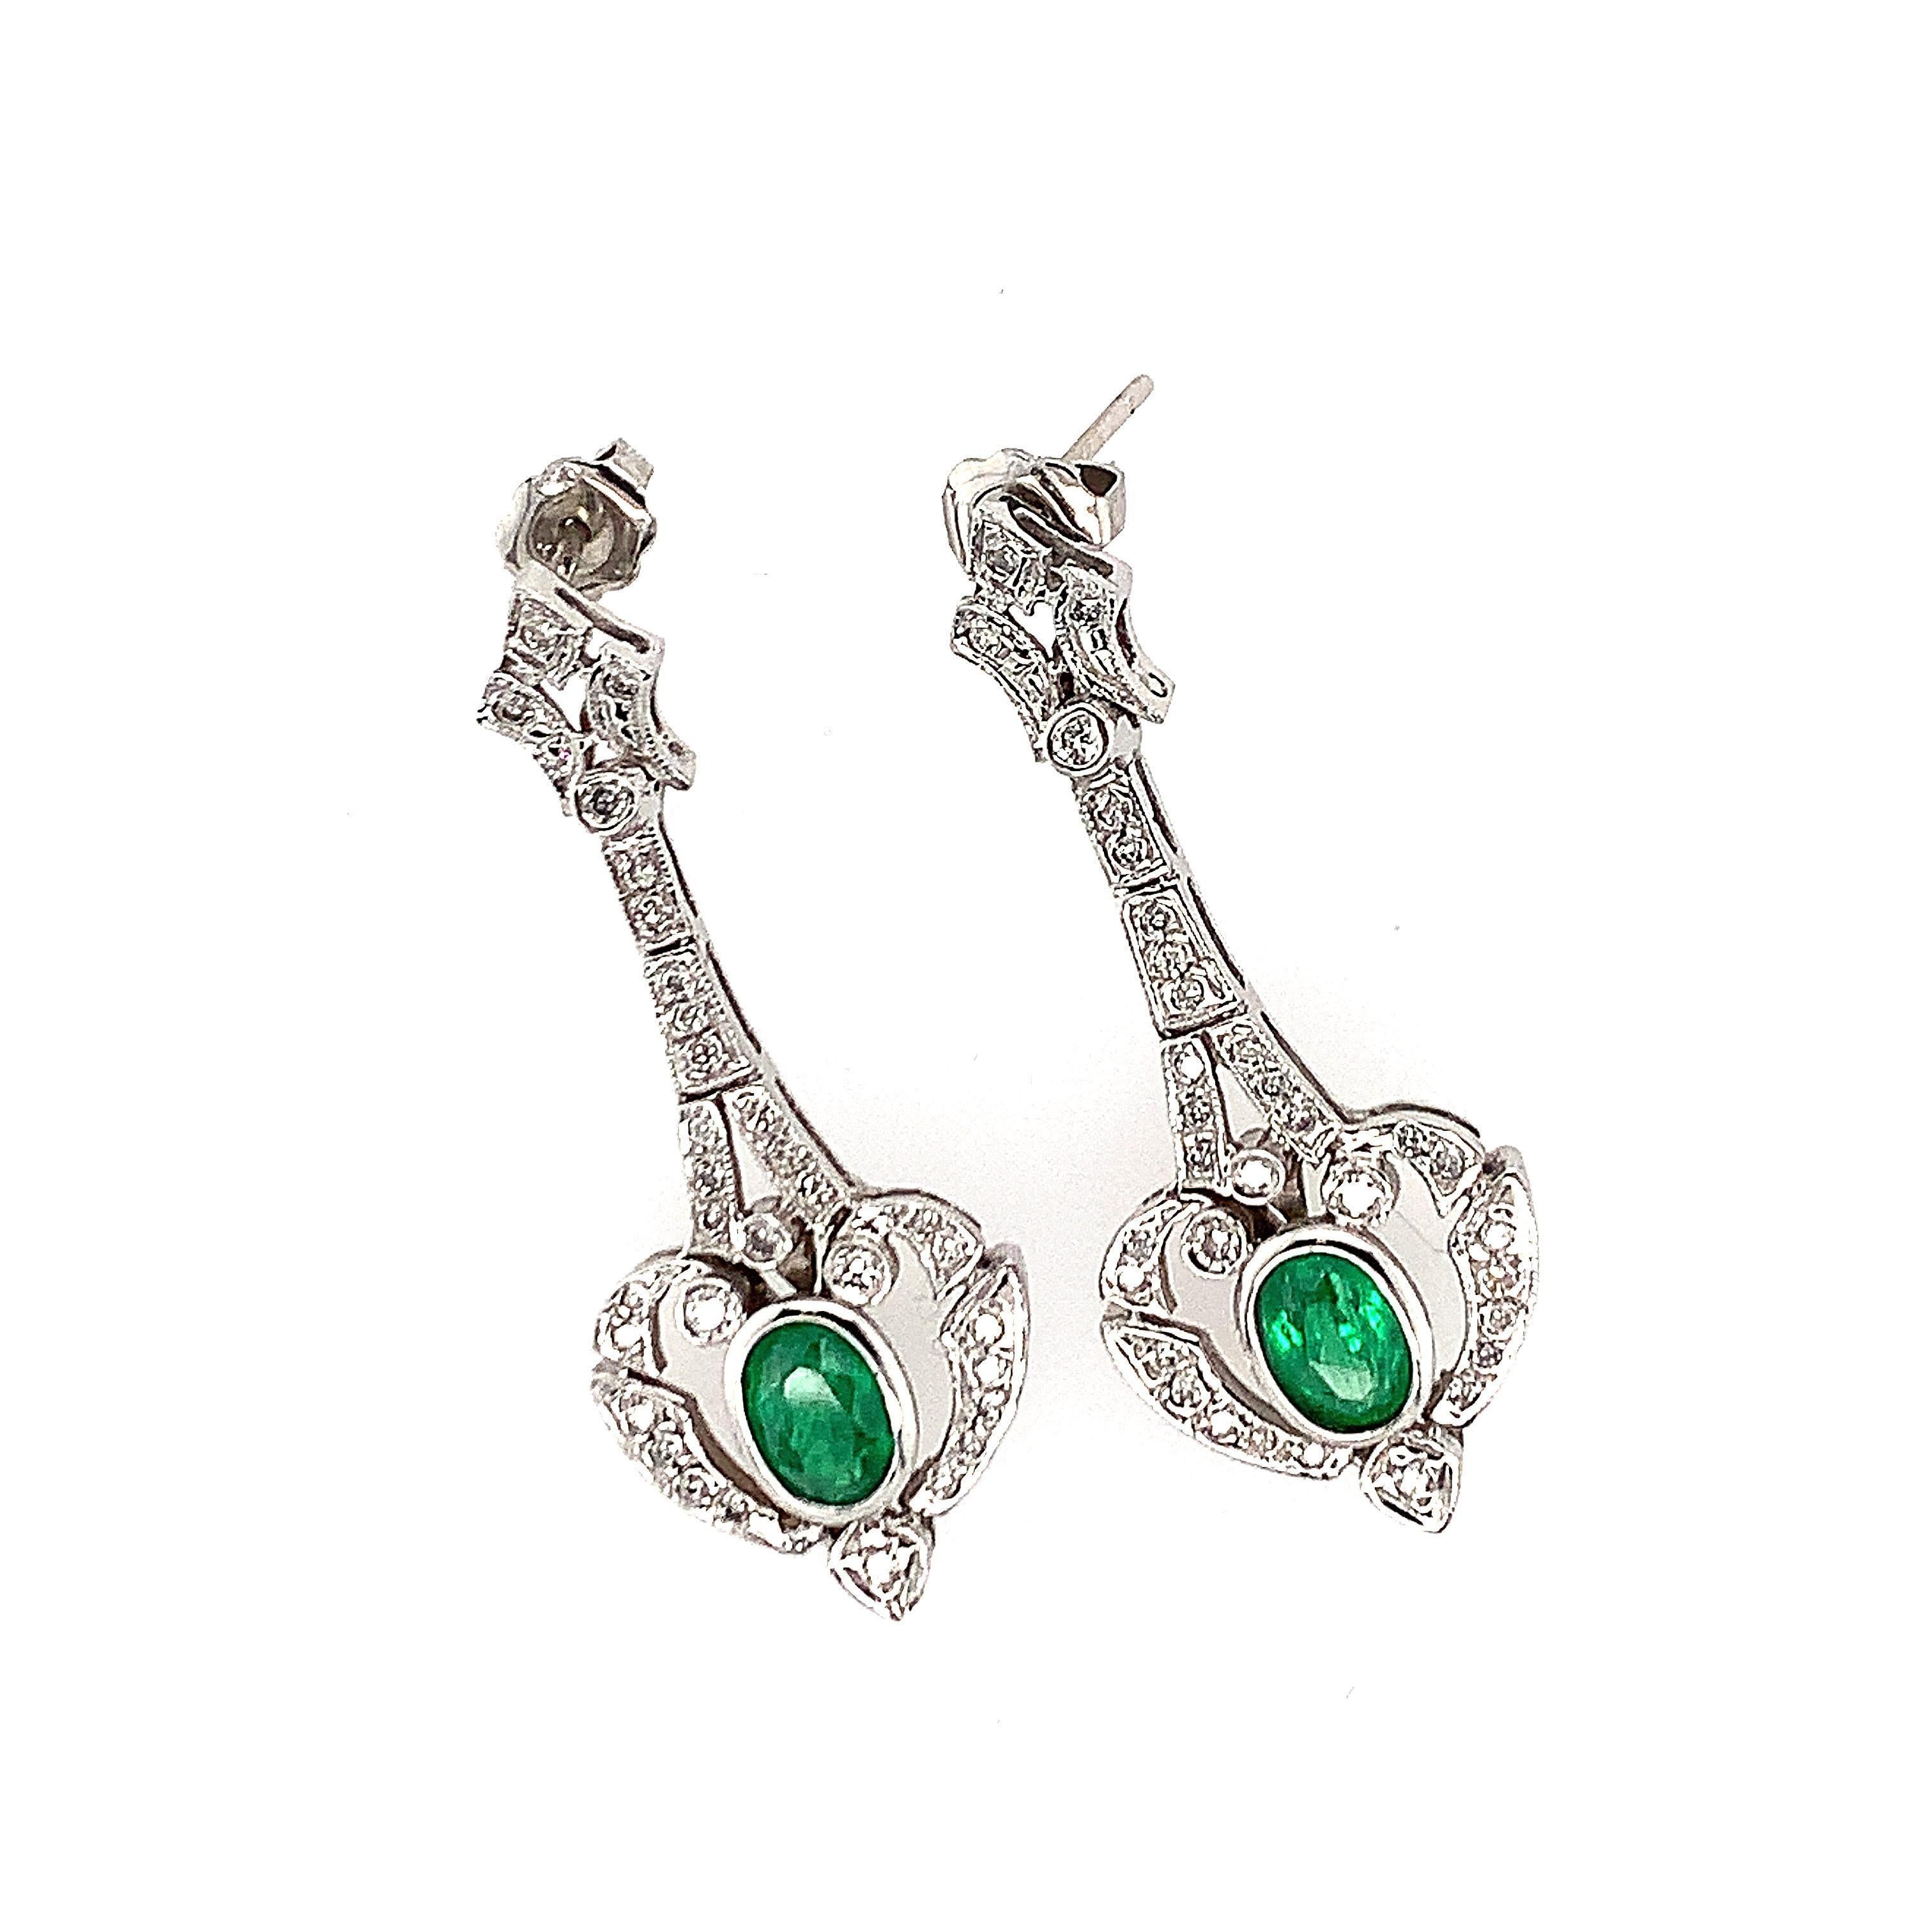 emerald earrings with diamonds